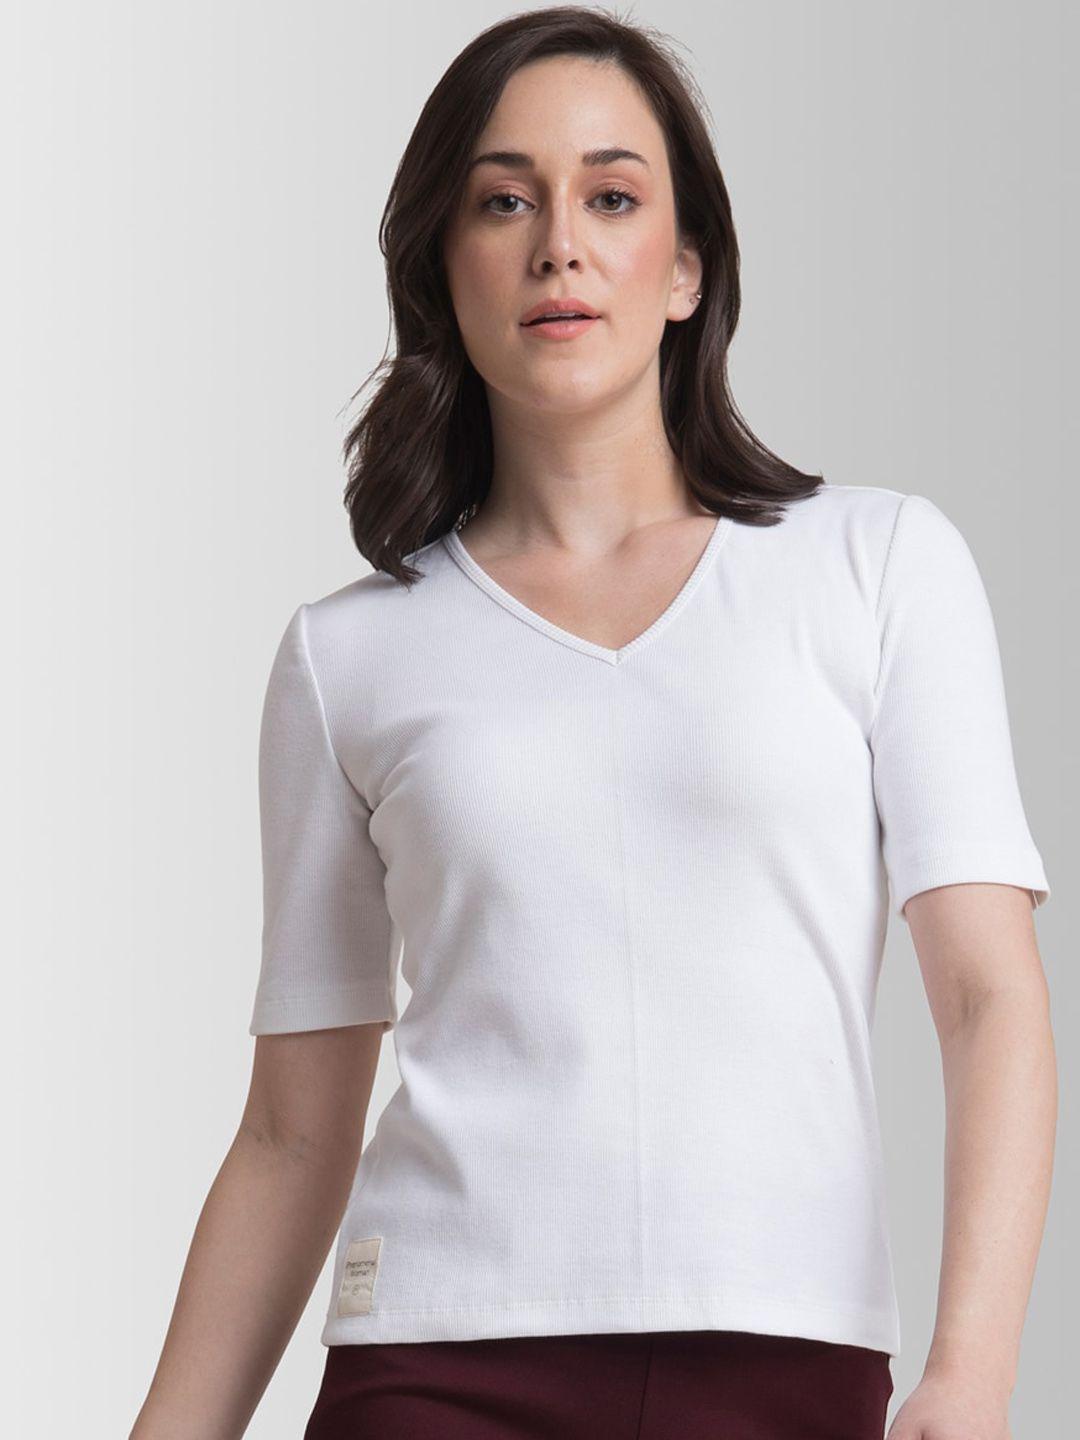 fablestreet women white solid v-neck t-shirt